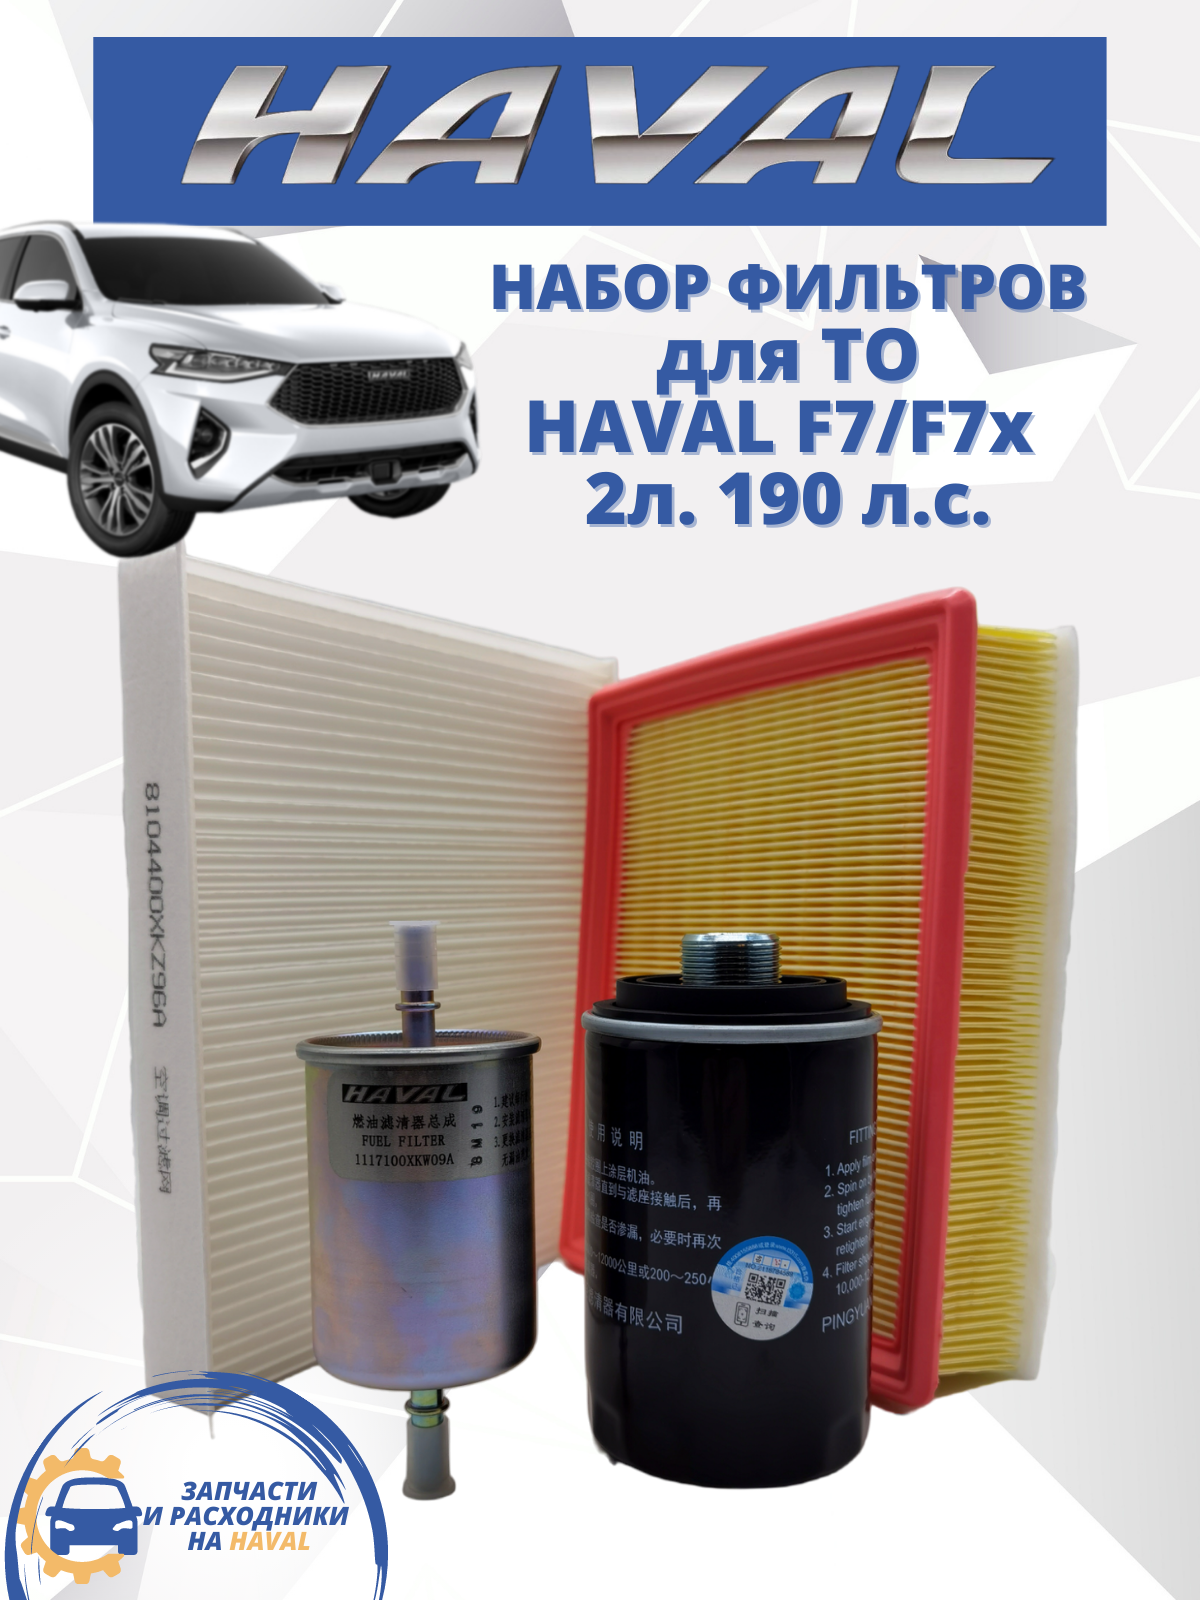 Комплект фильтров для ТО HAVAL-TO F7 F7X набор Хавал Ф7 Ф7х 2л. 190 л. с.